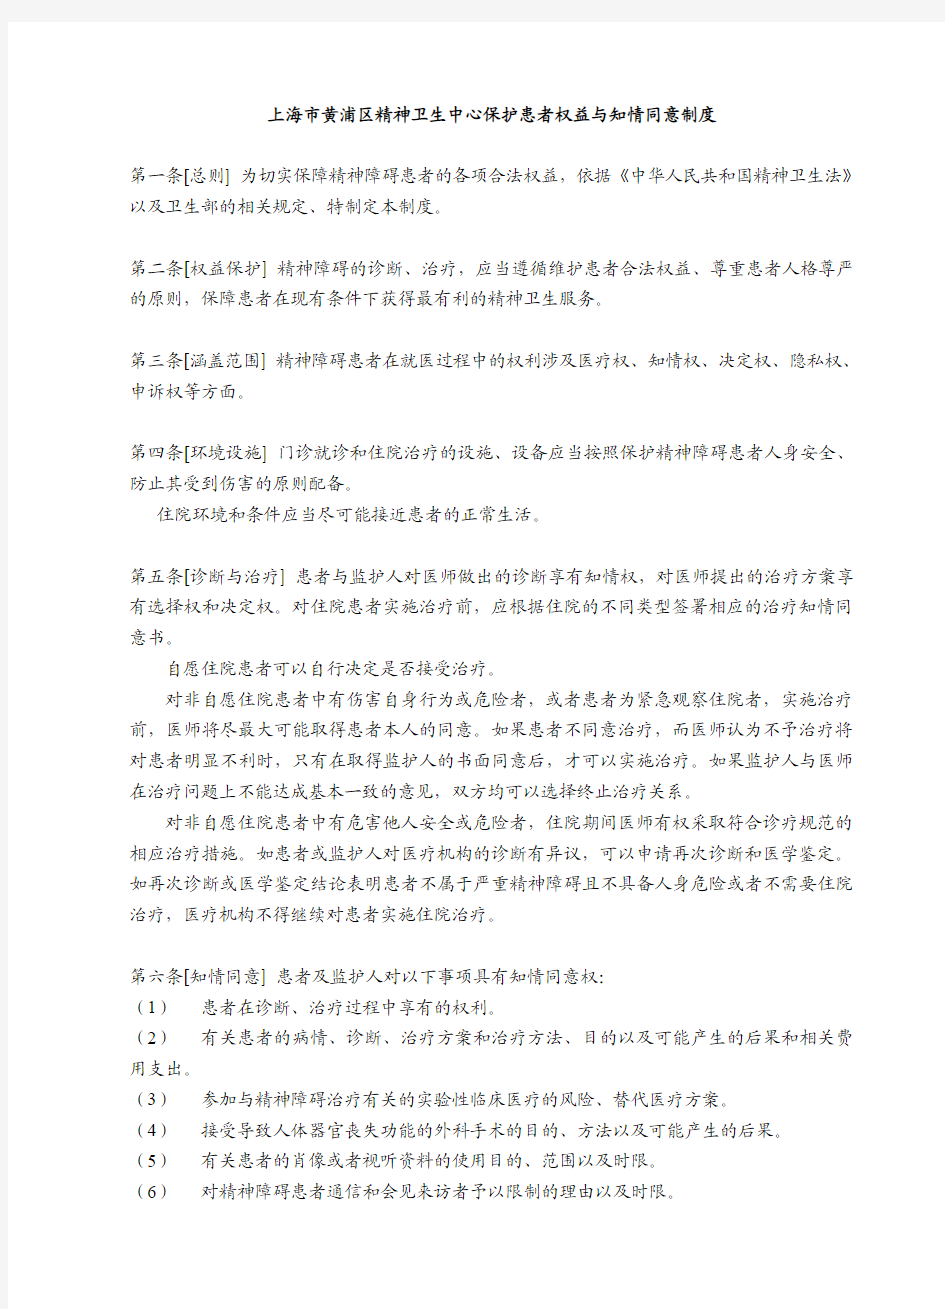 上海市精神卫生中心 保护患者权益与知情同意制度(2013.04.08)